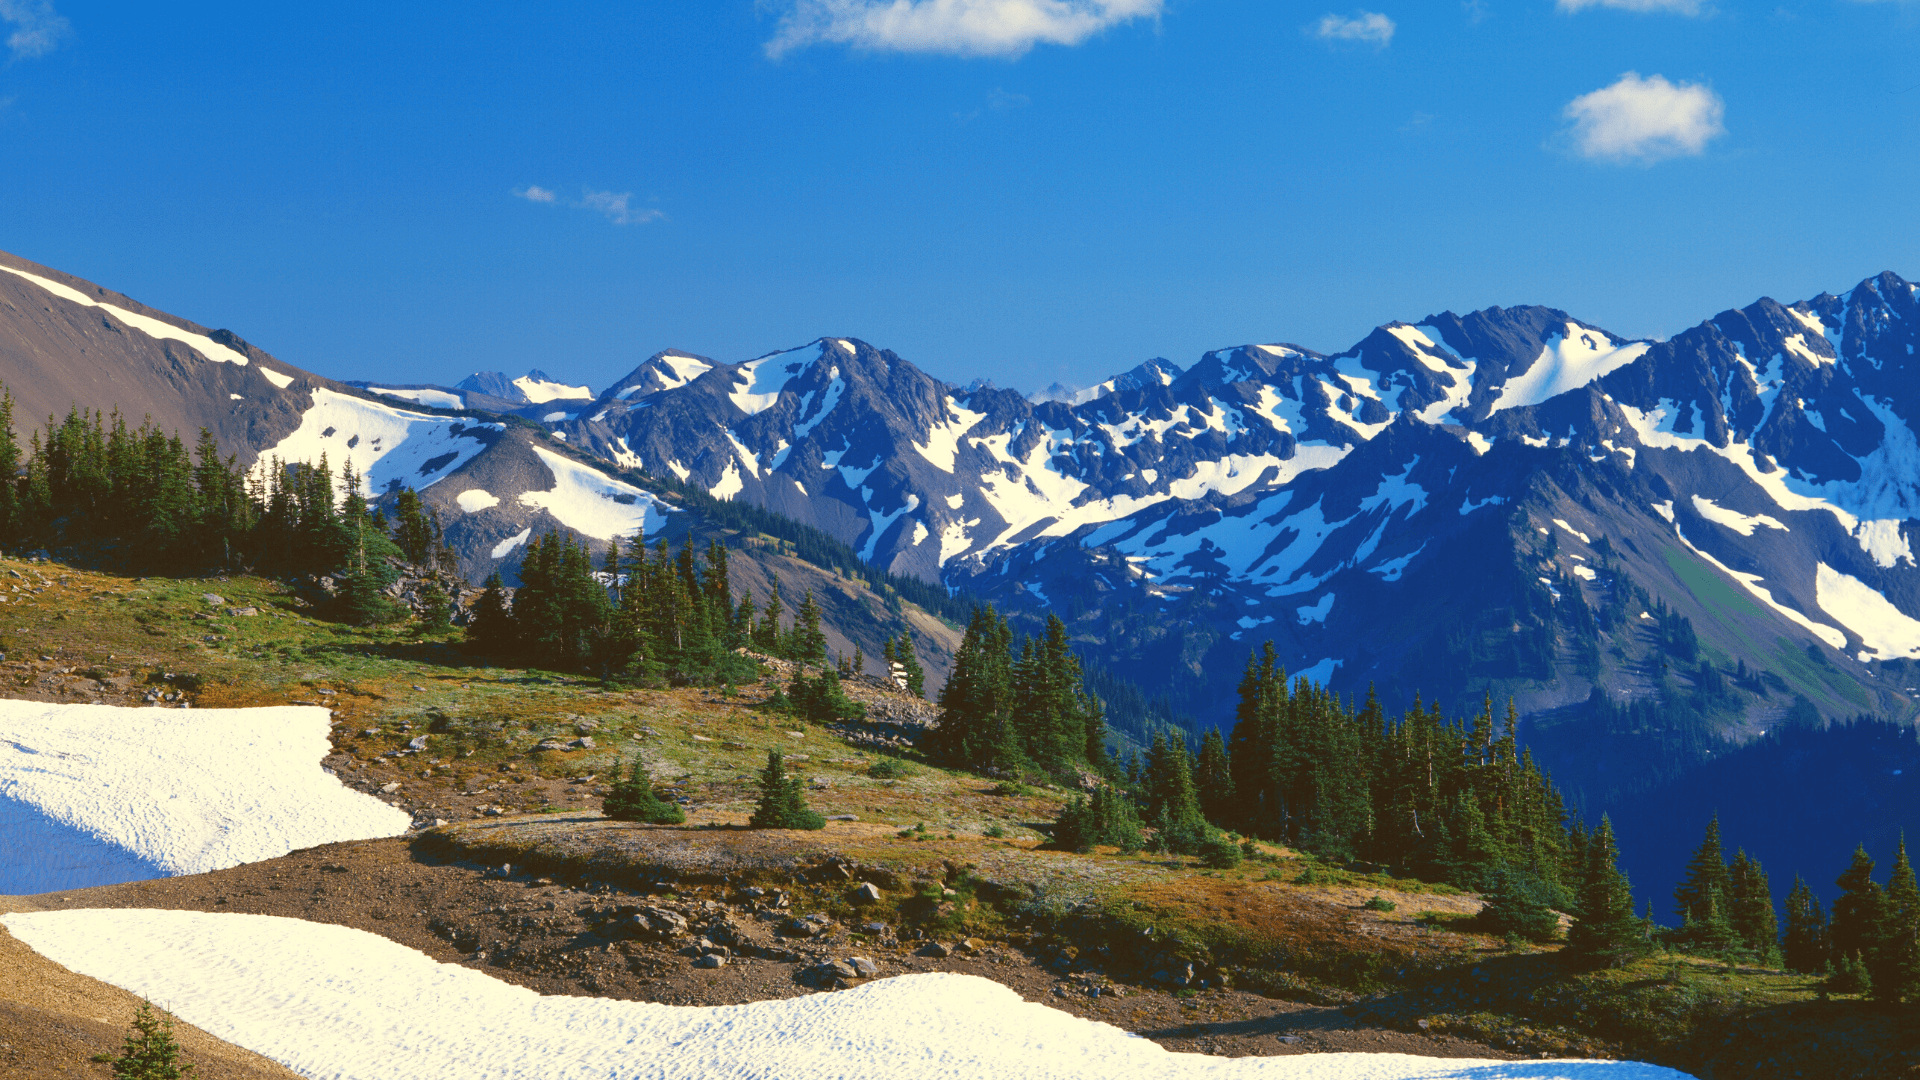 Mount Olympus, Olympic National Park, Washington State